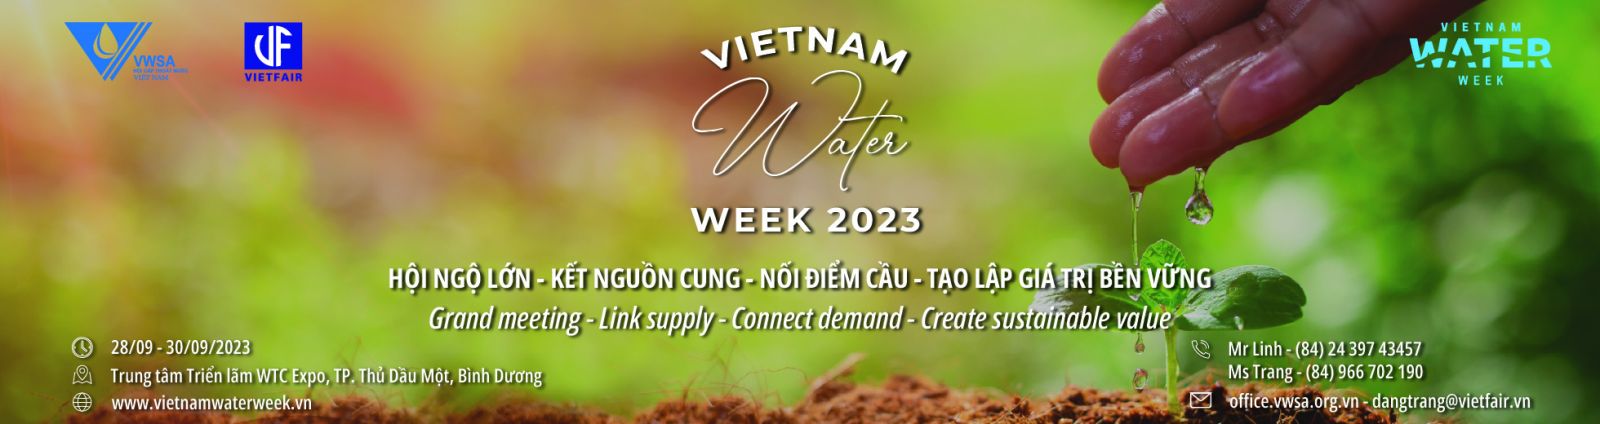 Vietnam Water Week